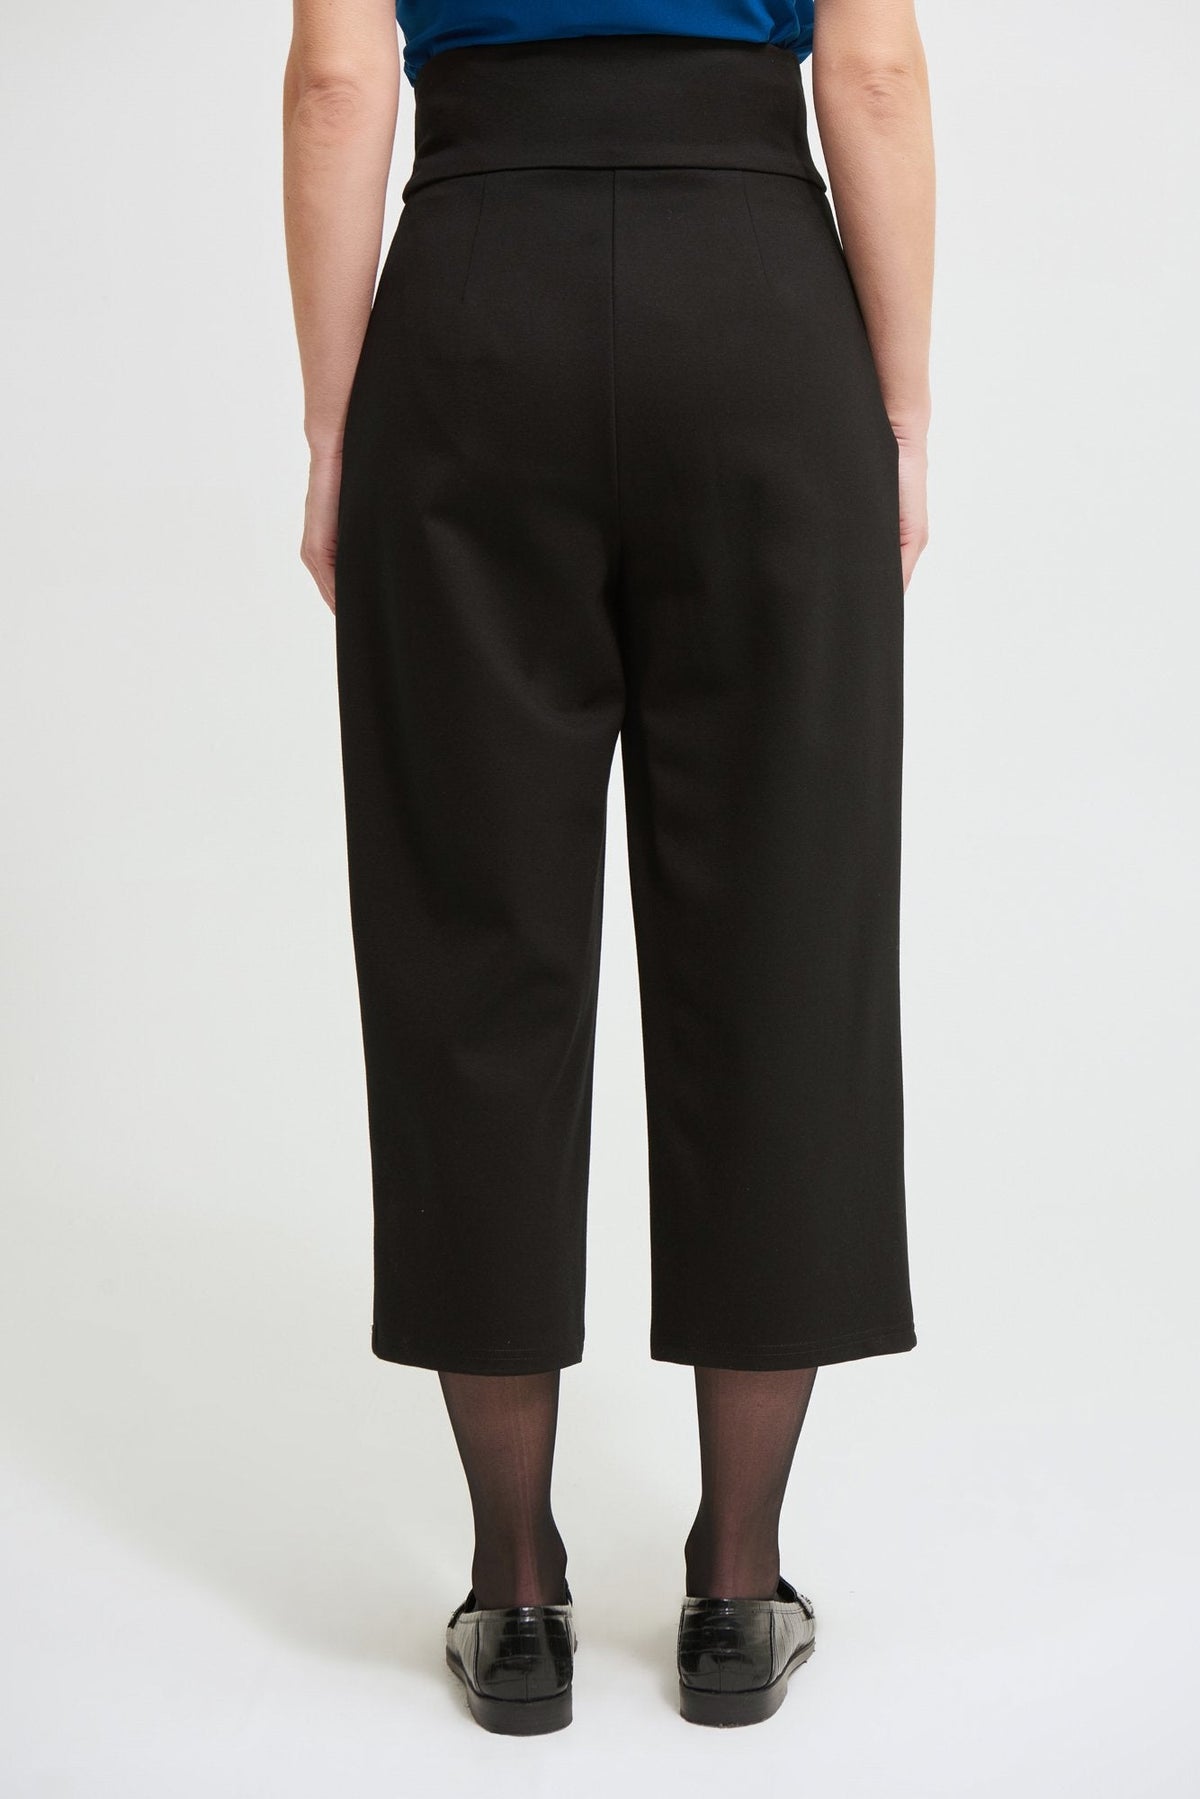 Pantalon Joseph Ribkoff - 213684 couleur BLACK - Boutique Vvög, référence en mode pour homme et femmes